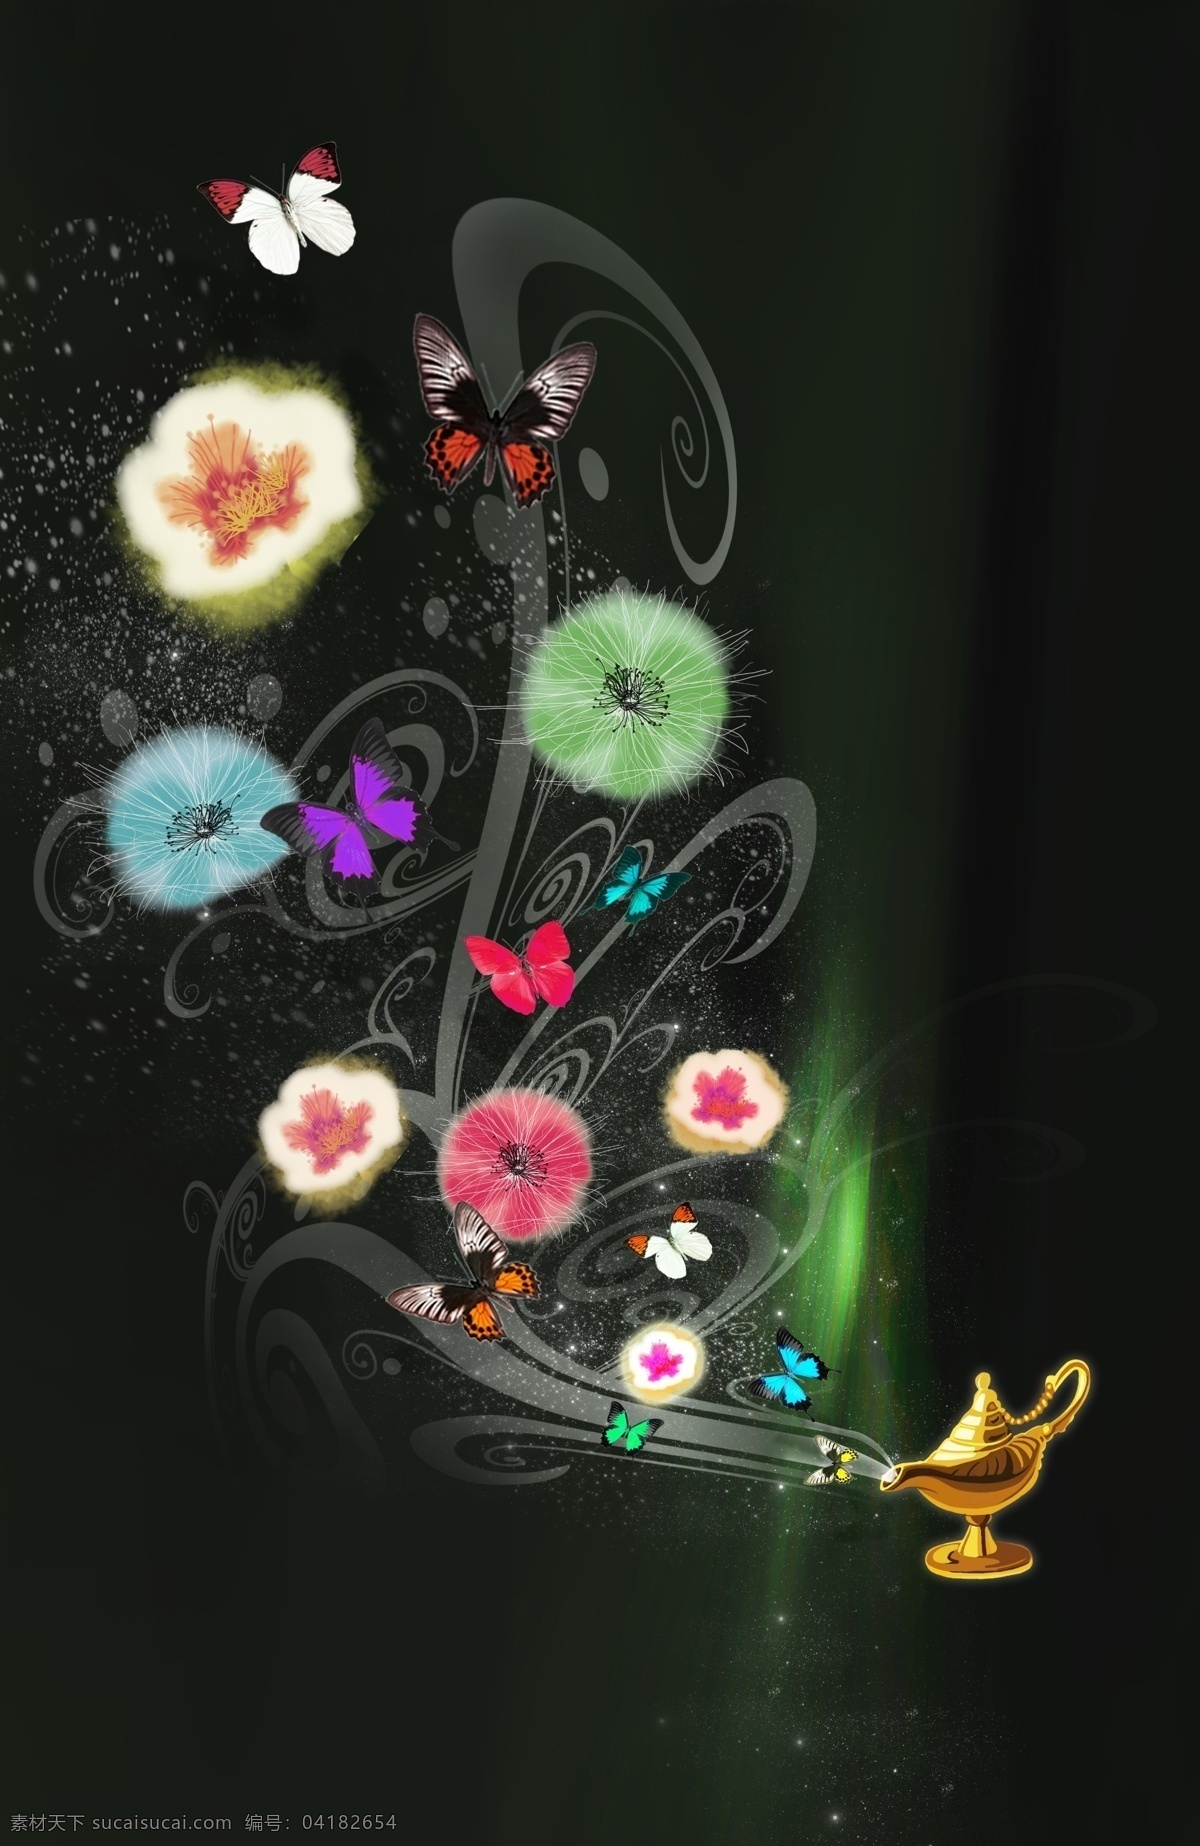 阿拉丁神灯 梦幻花朵 时尚花纹 蝴蝶 画册设计 广告设计模板 psd素材 黑色